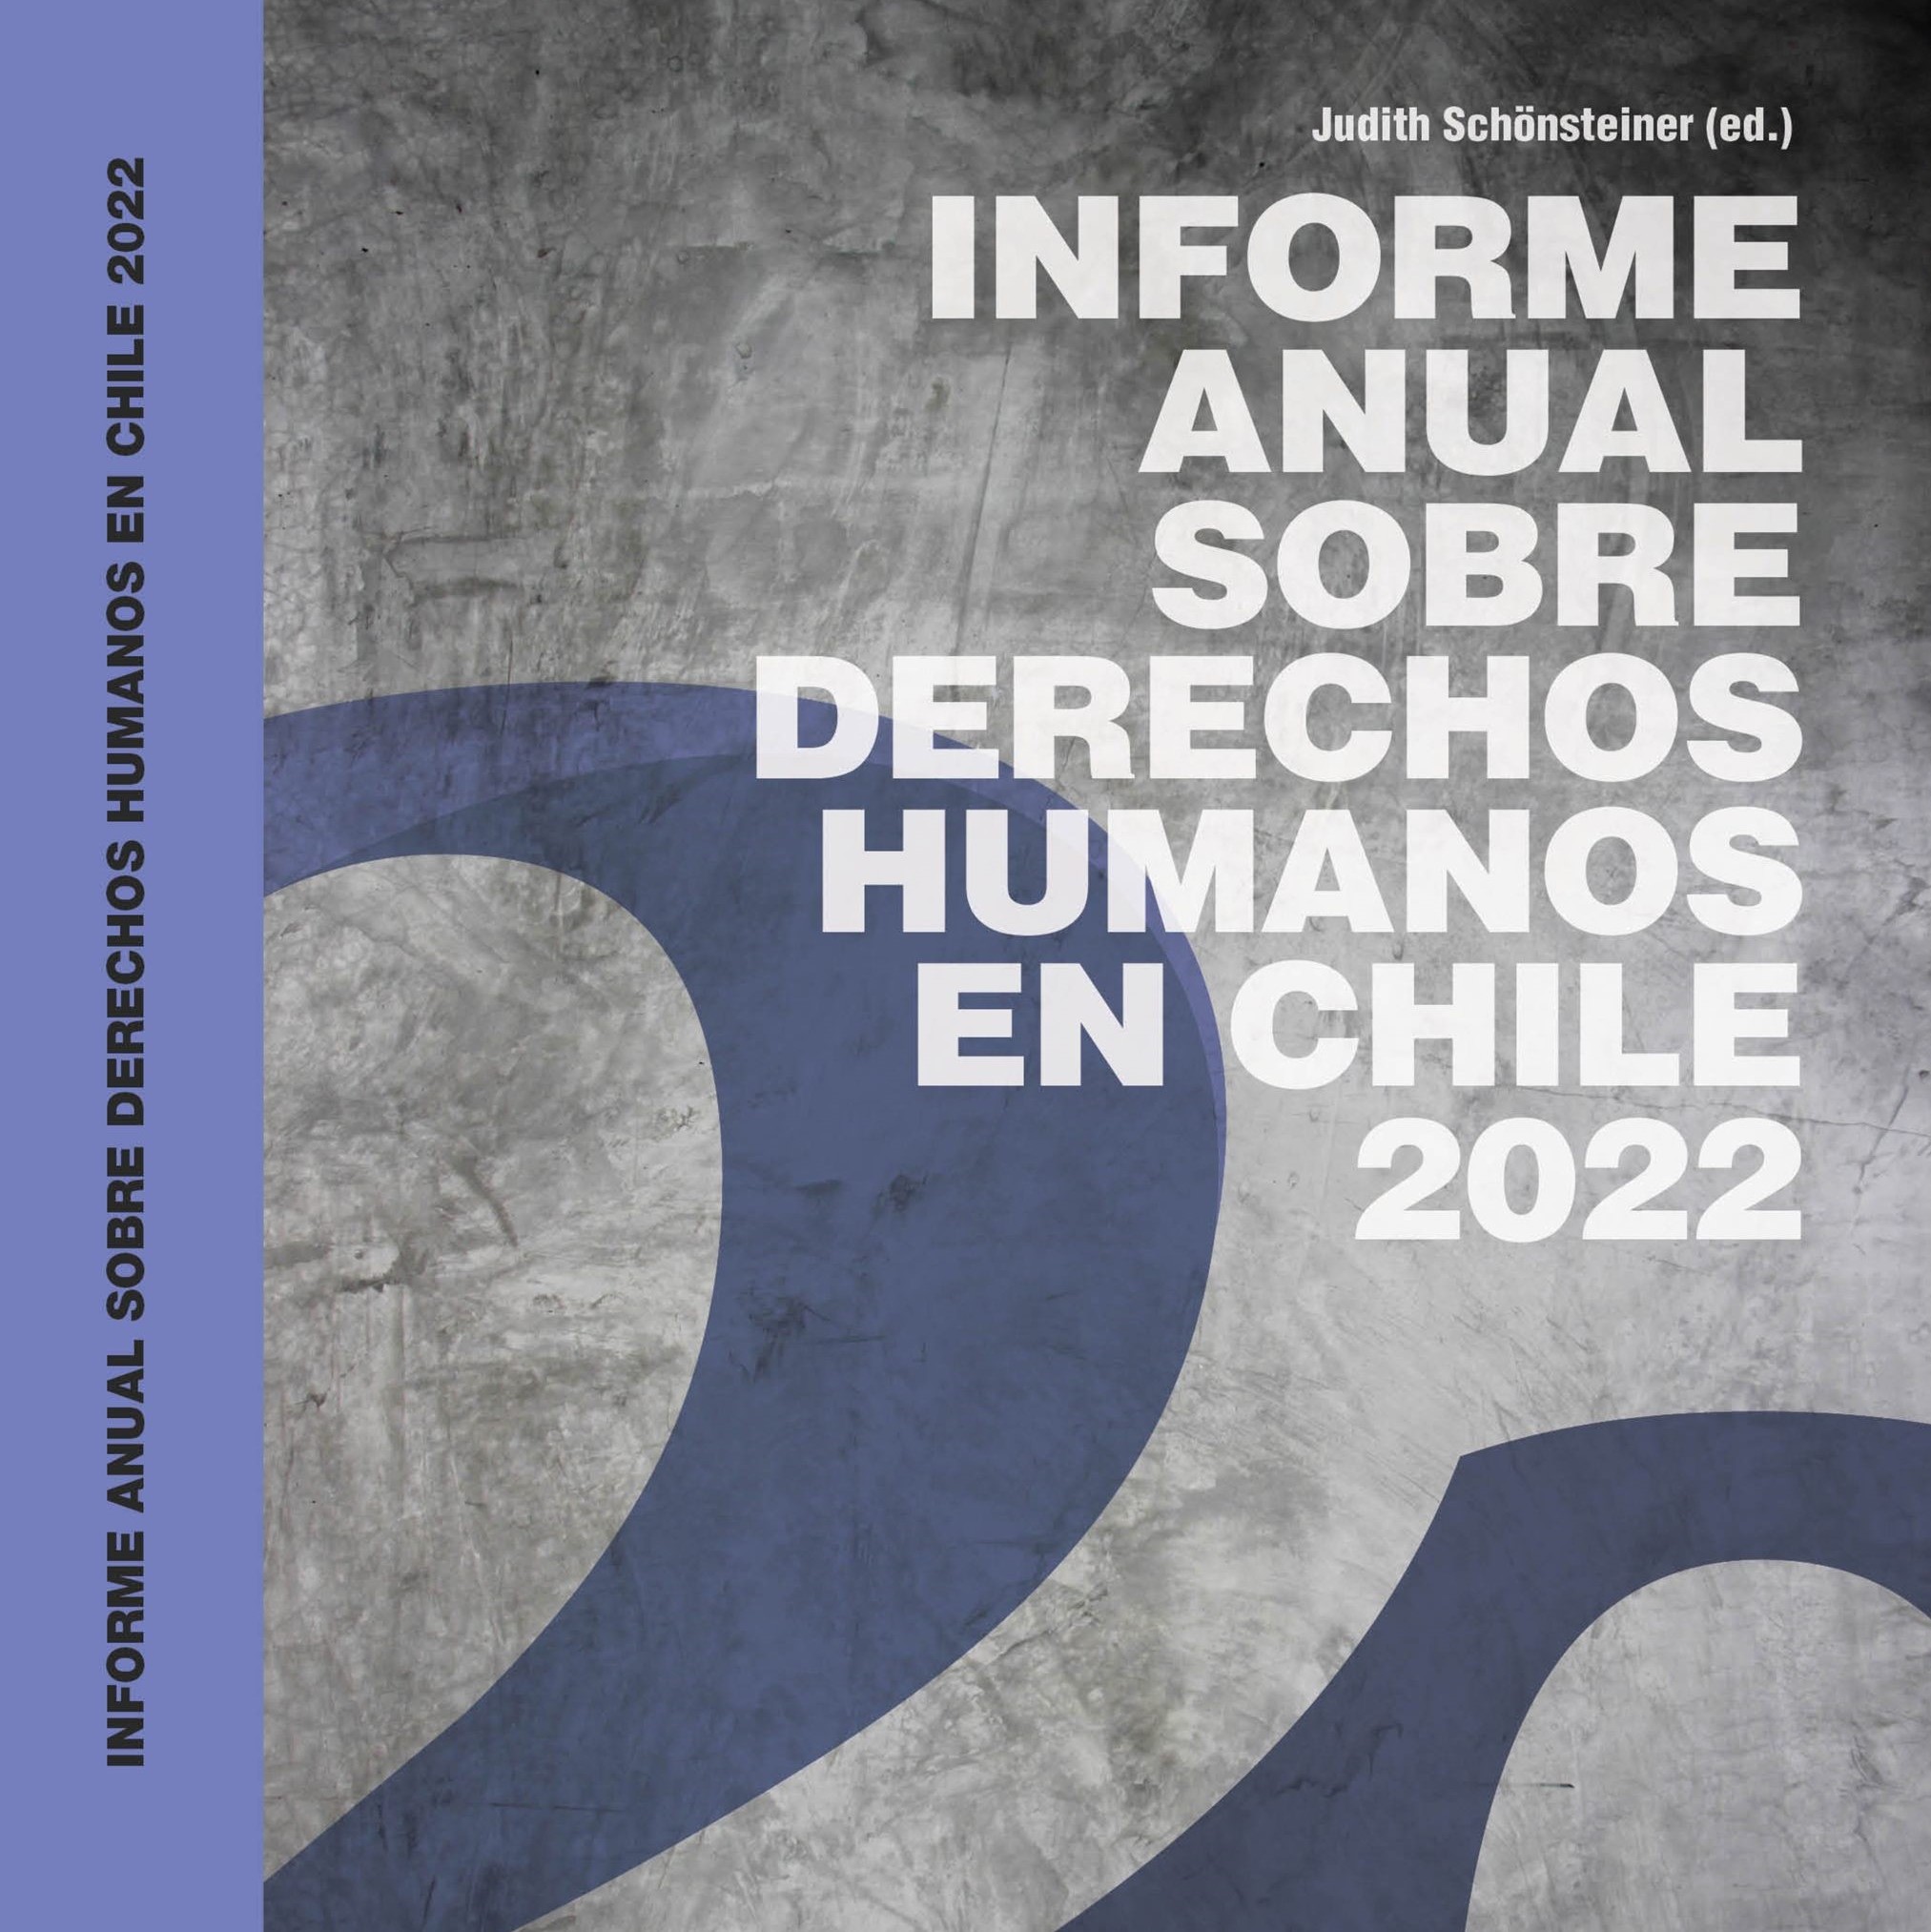 18/O – “Mirando sobre la muralla china”: Adelanto del Informe Anual sobre Derechos Humanos en Chile 2022 UDP